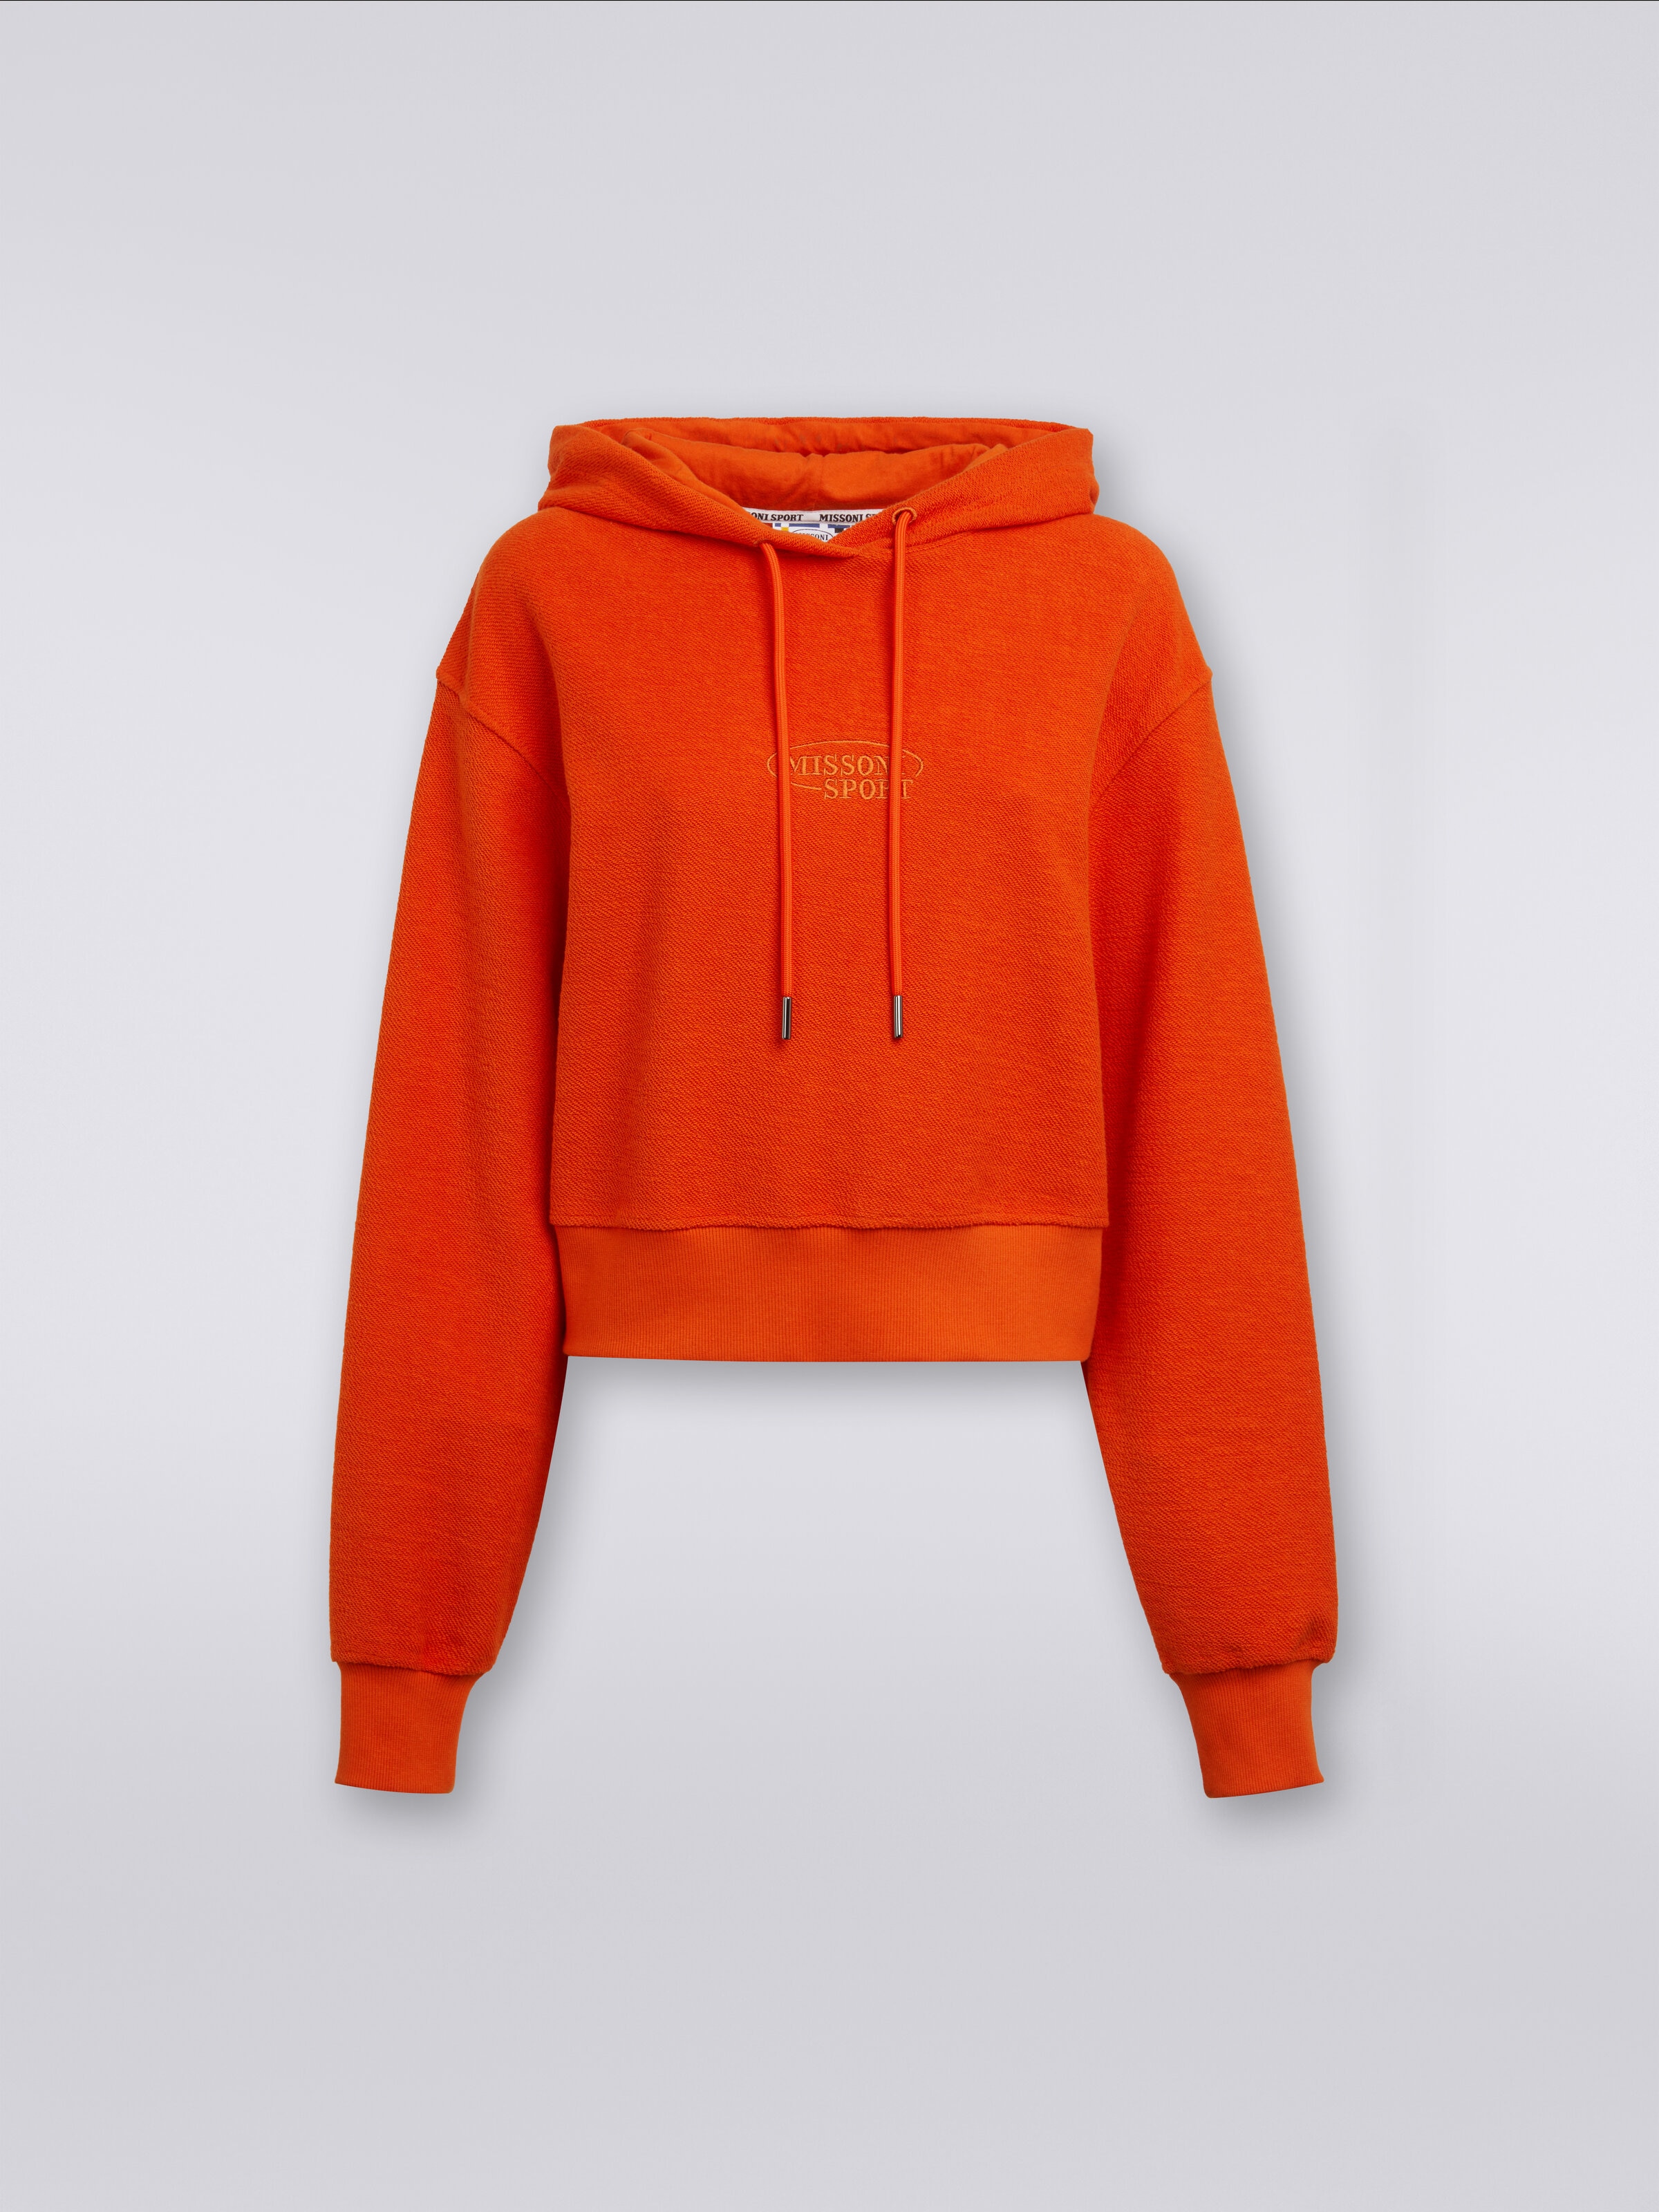 Crop brushed fleece sweatshirt with hood and logo, Orange - 0